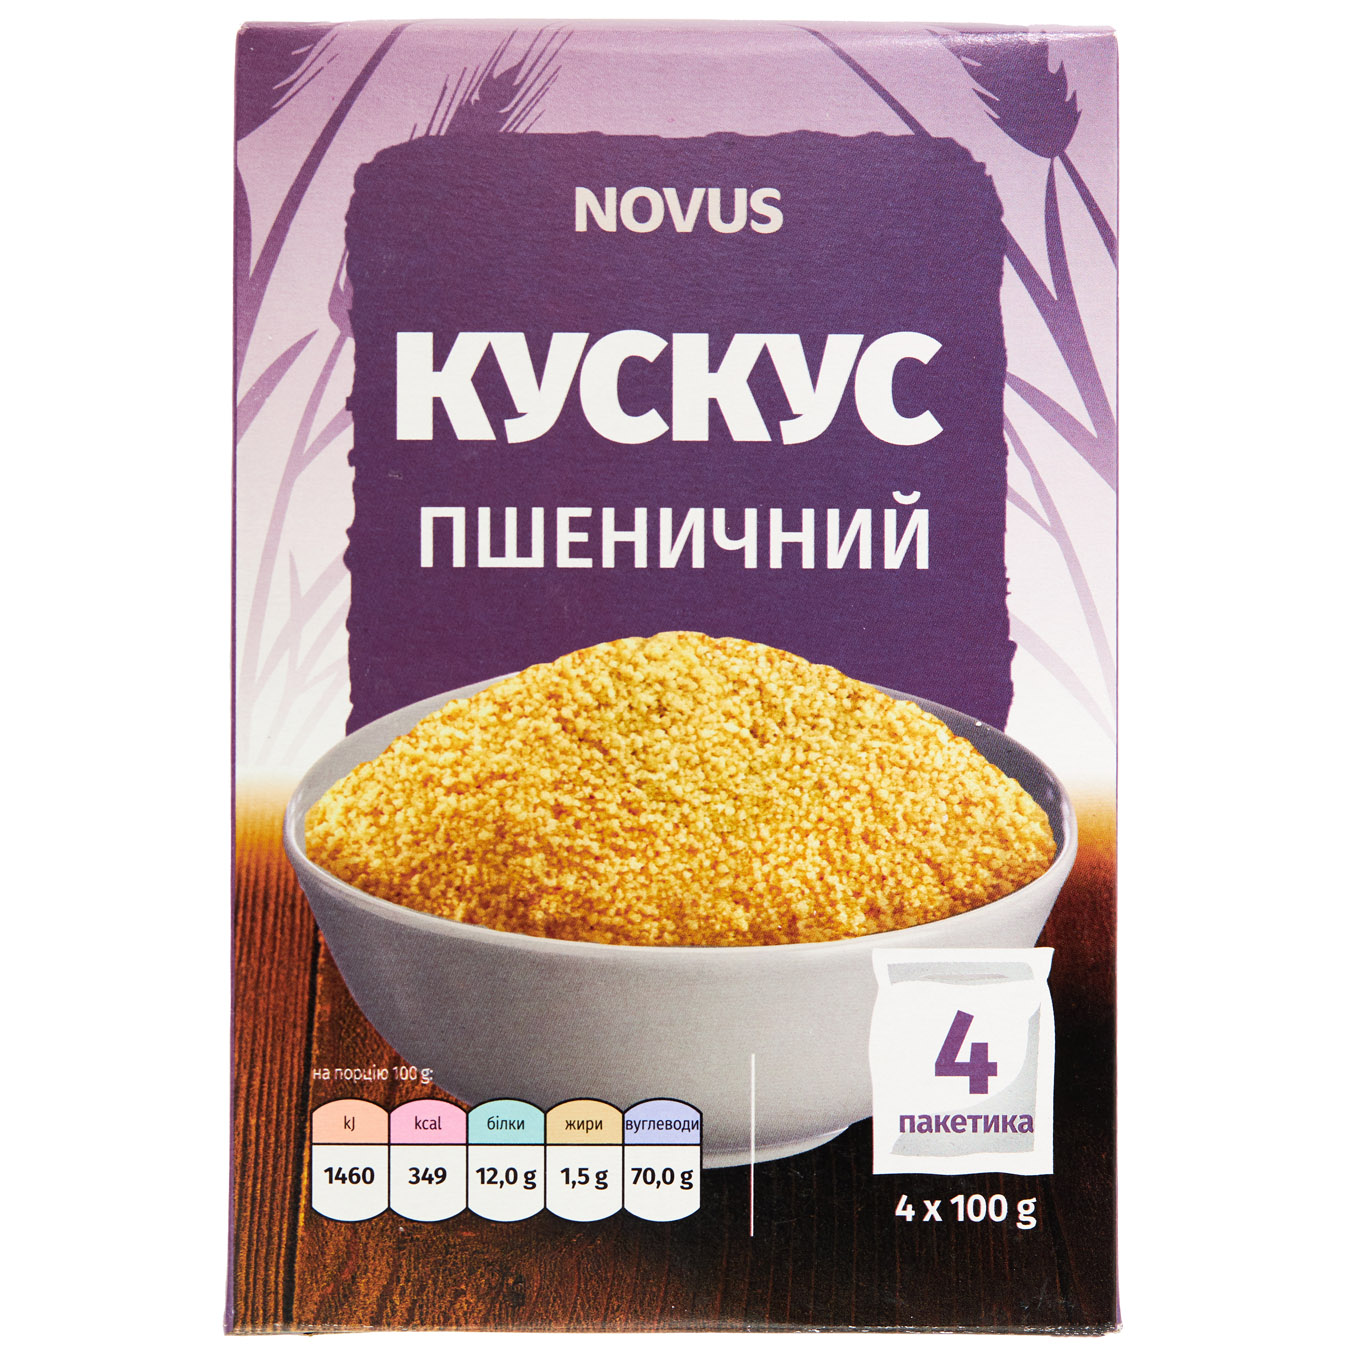 NOVUS Portioned Wheat Couscous 4x100g